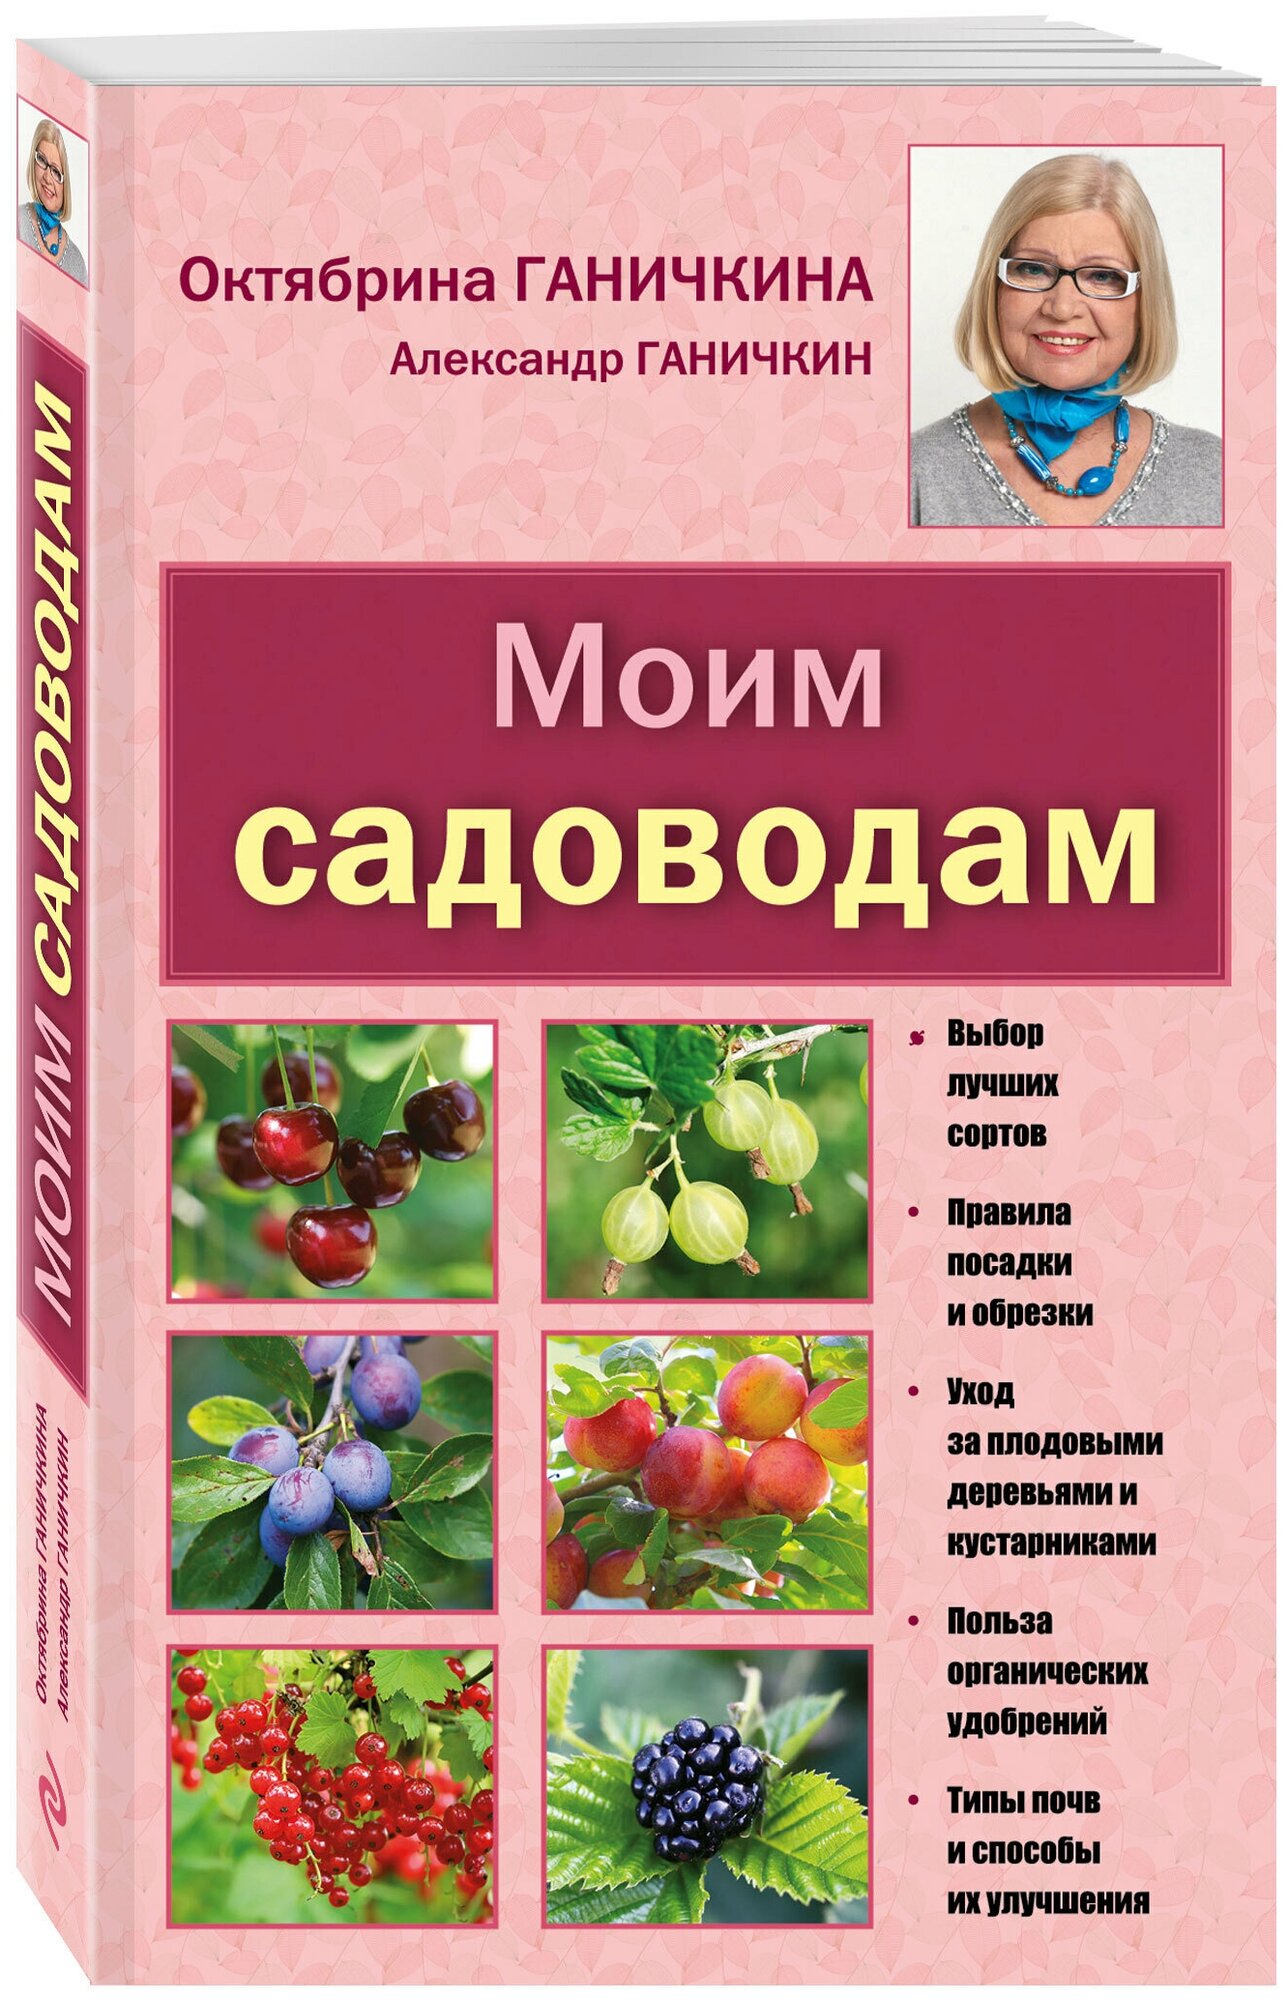 Книга: Моим садоводам / Ганичкина Октябрина Алексеевна